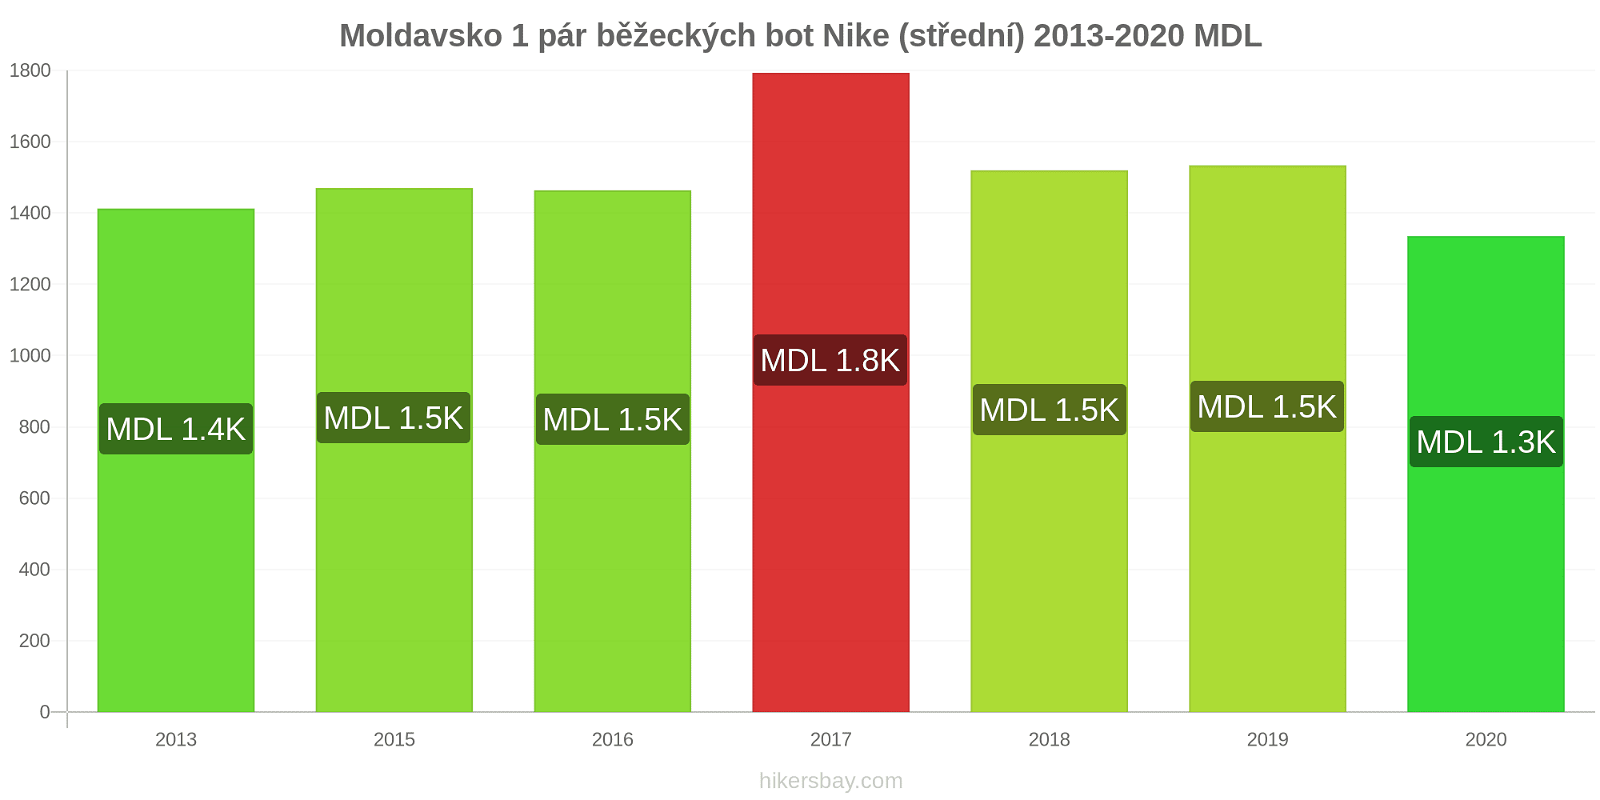 Moldavsko změny cen 1 pár běžeckých bot Nike (střední) hikersbay.com